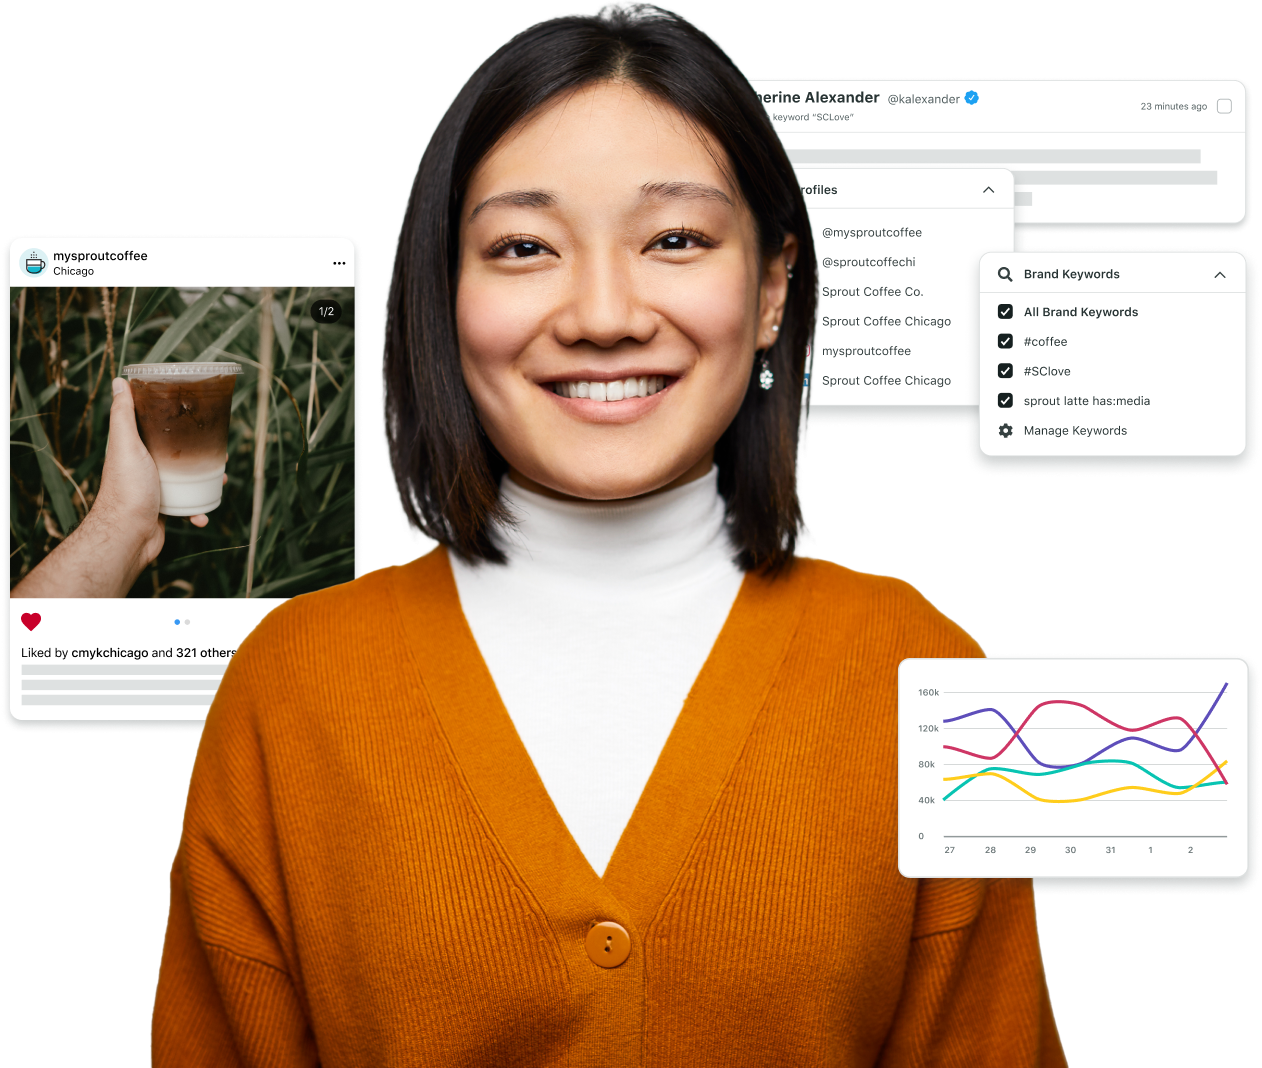 Une utilisatrice de Sprout souriante avec des clichés de la plateforme Sprout illustrant toute l'étendue de ses fonctionnalités de gestion des réseaux sociaux.